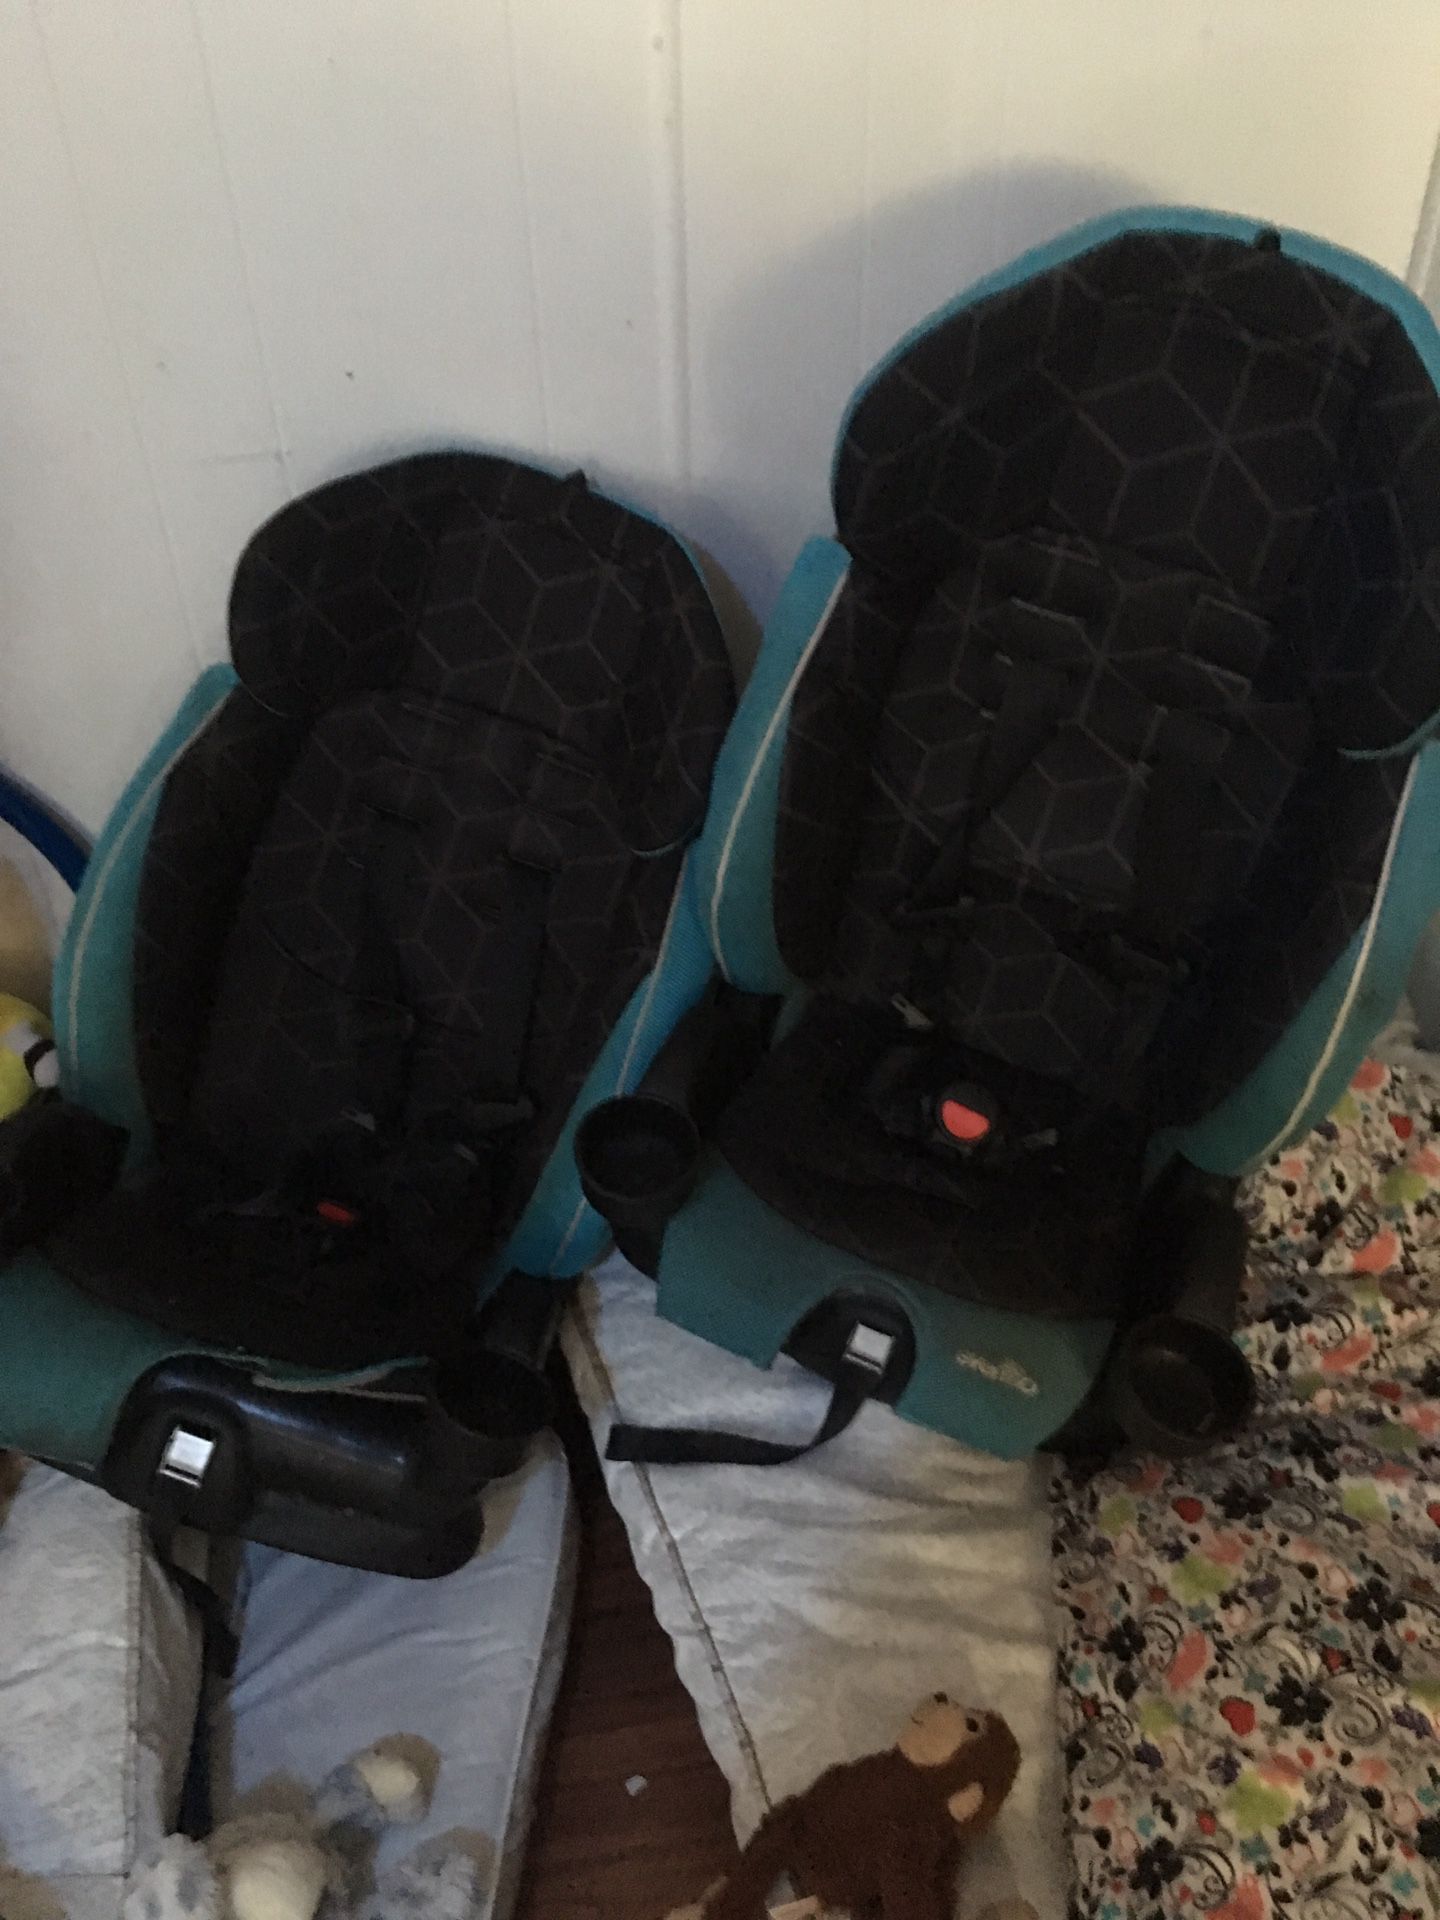 Toddler car seats